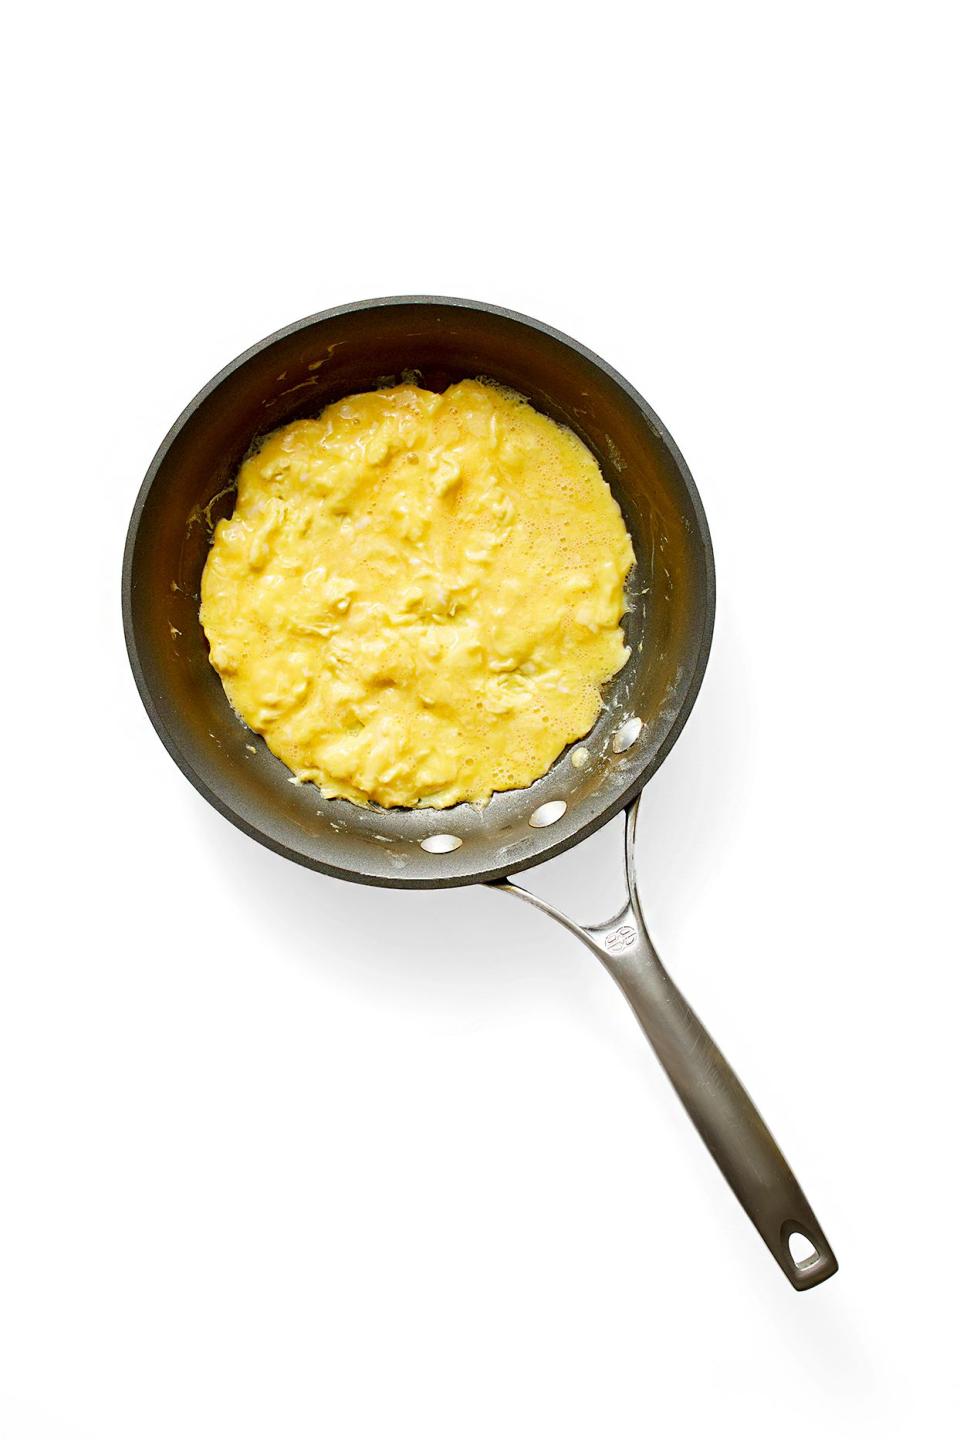 Eggs in pan for omelet